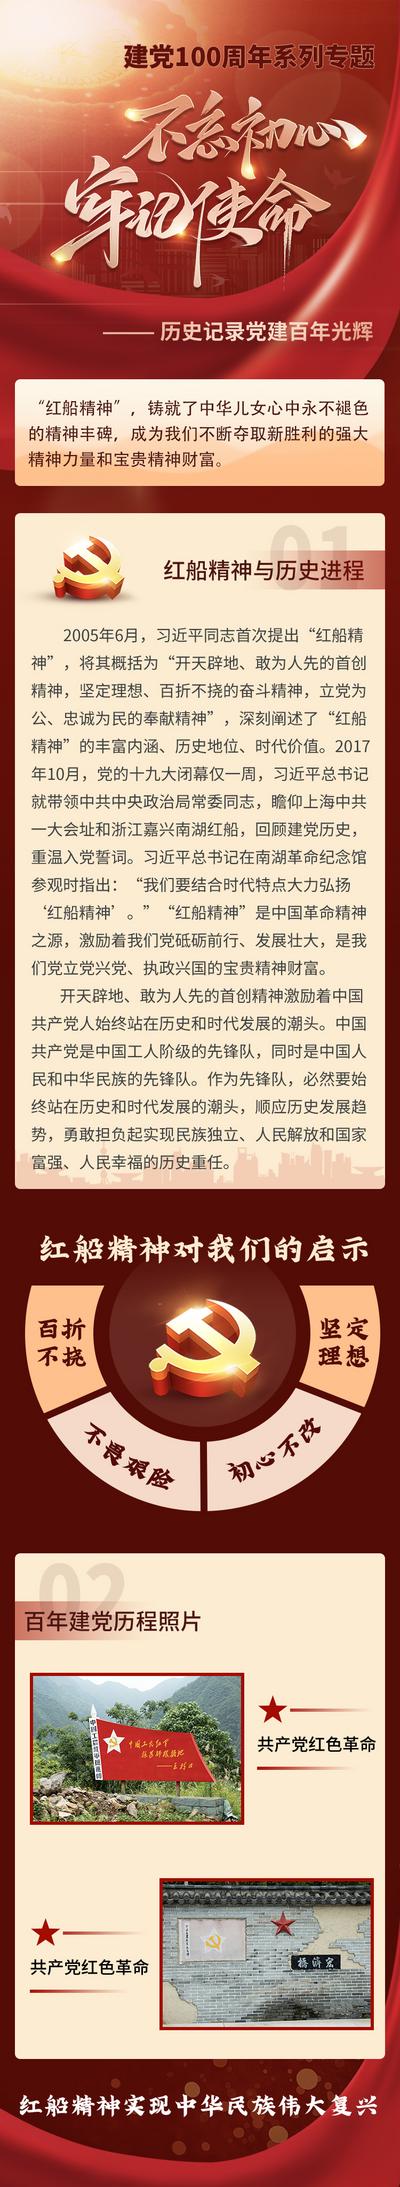 南门网 红色爱国建党百年历史记录长图